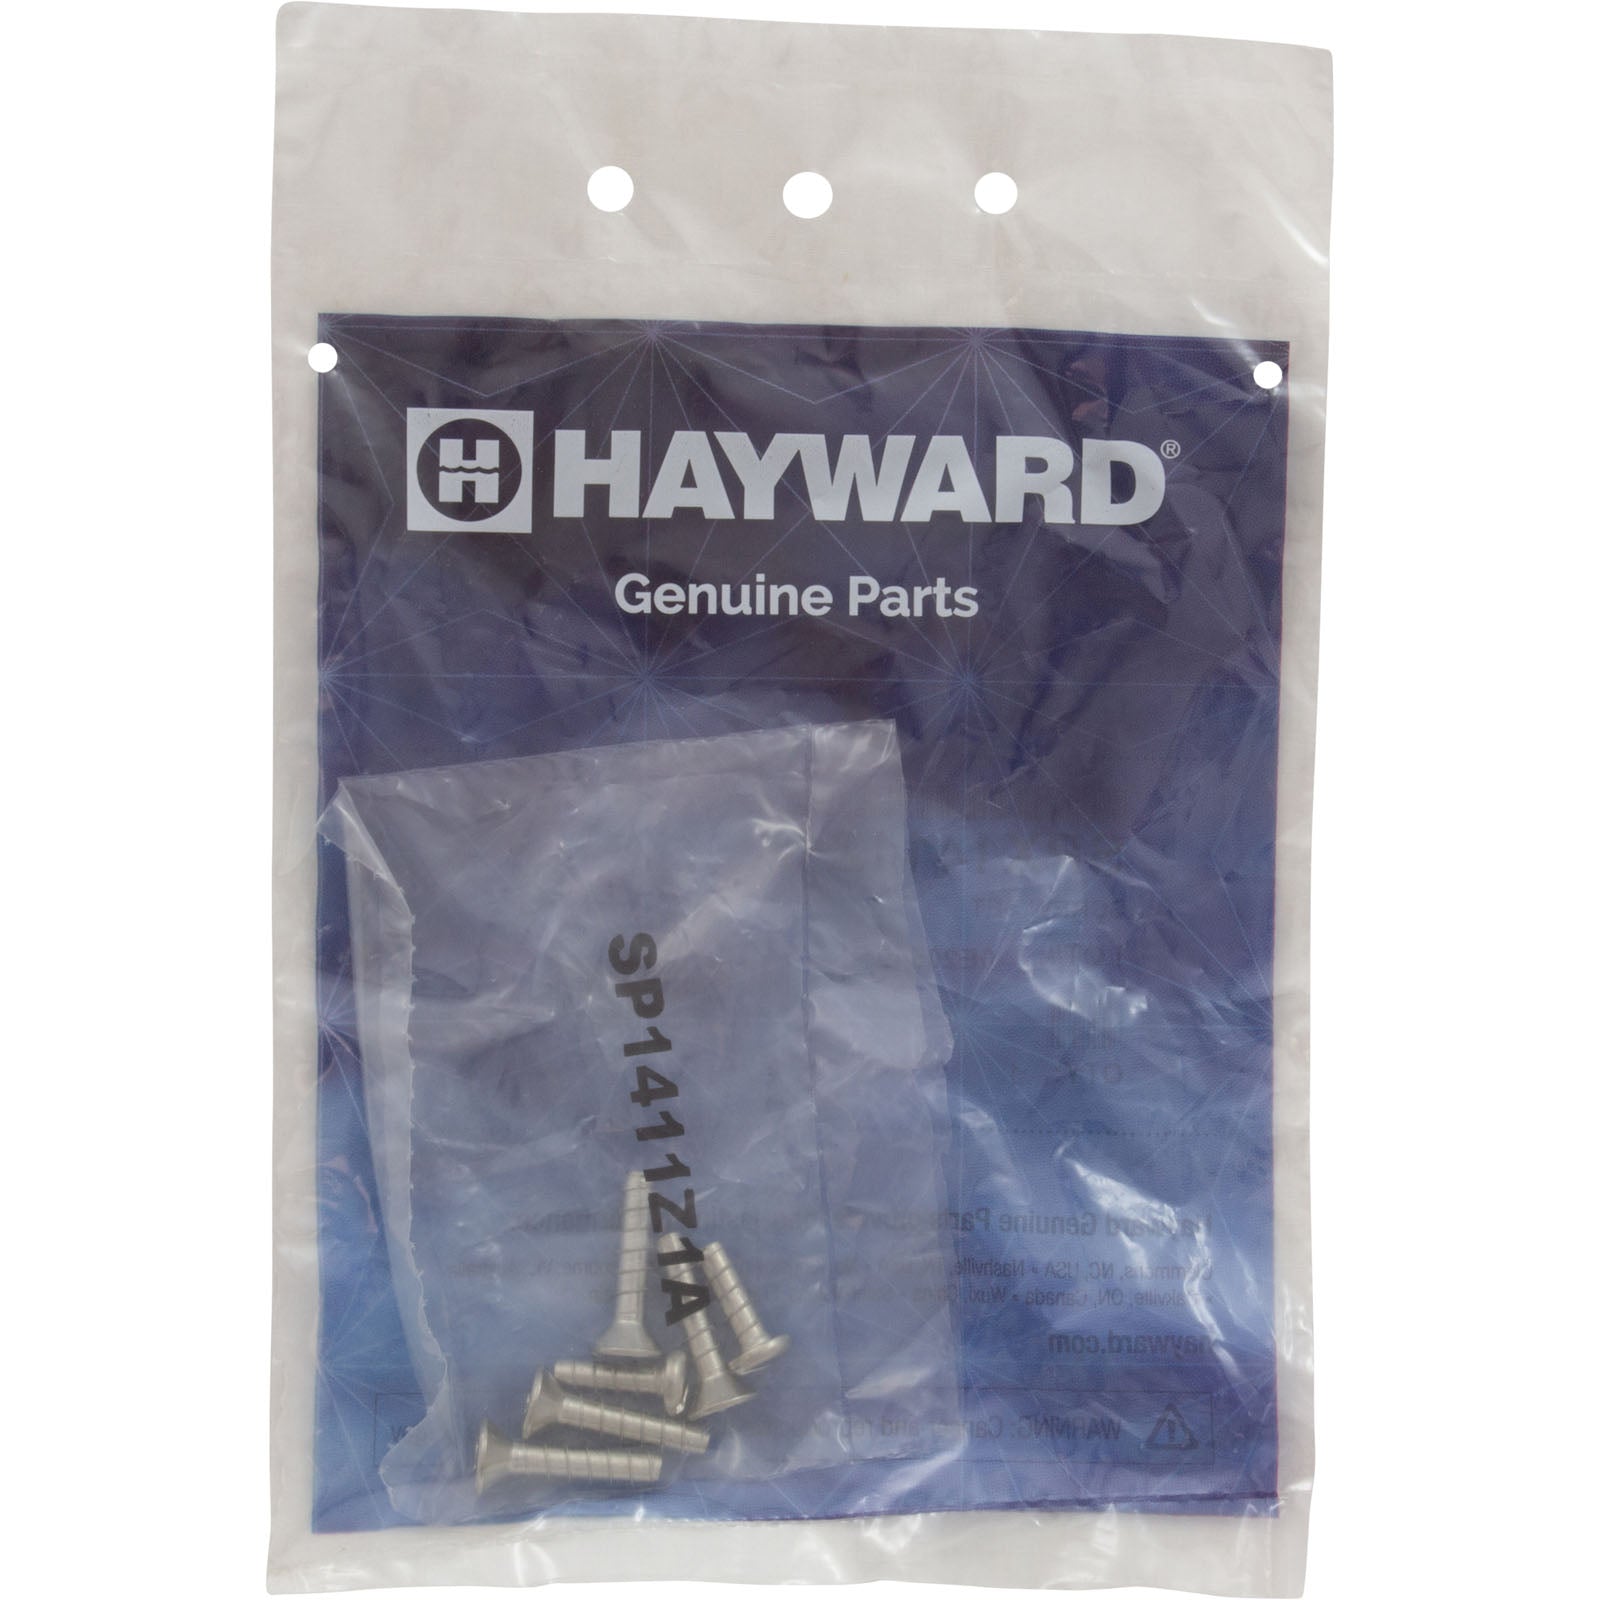 Screw Kit, Hayward, Inlet Fitting, Quantity 6 SPX1411Z1A